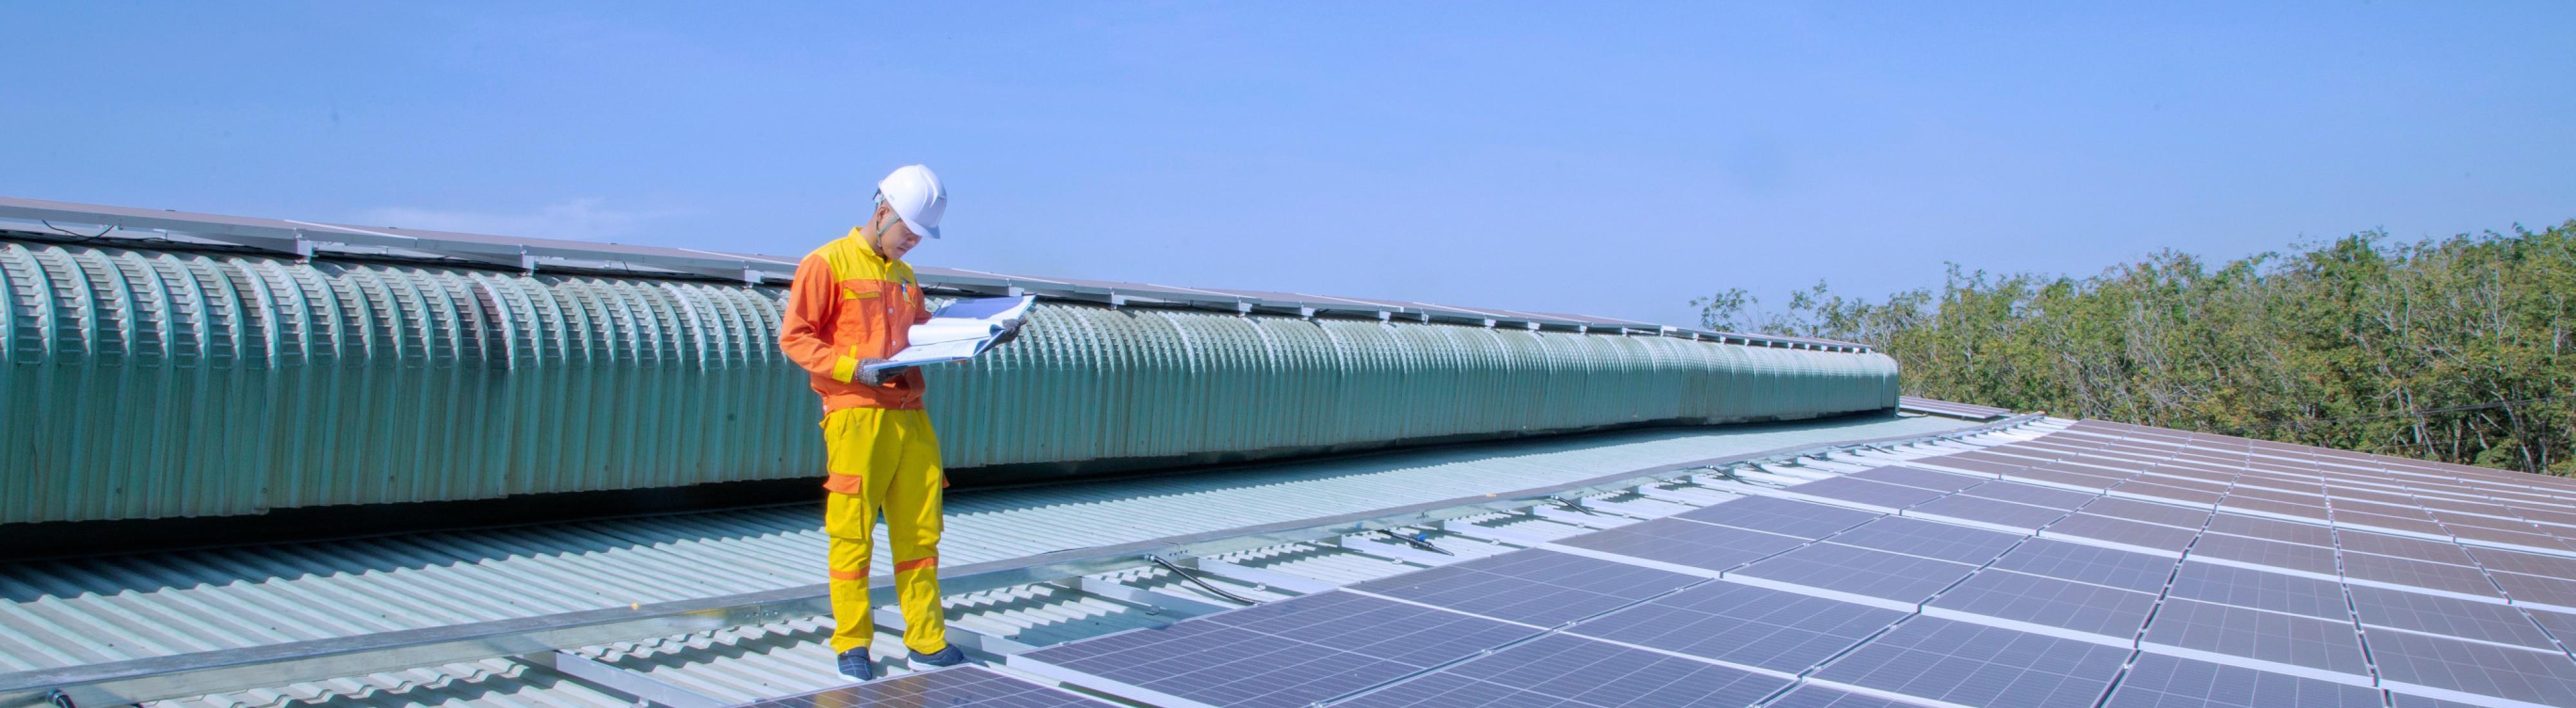 Mann in Arbeitskleidung steht auf großer Photovoltaikfläche, die auf einem Hausdach angebracht ist. 